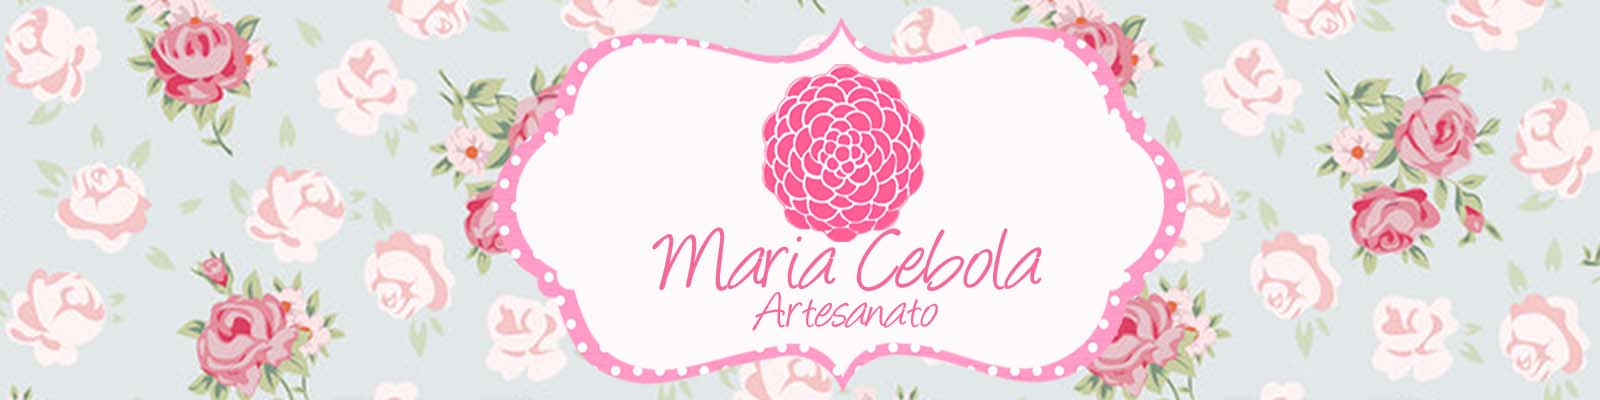 Maria Cebola